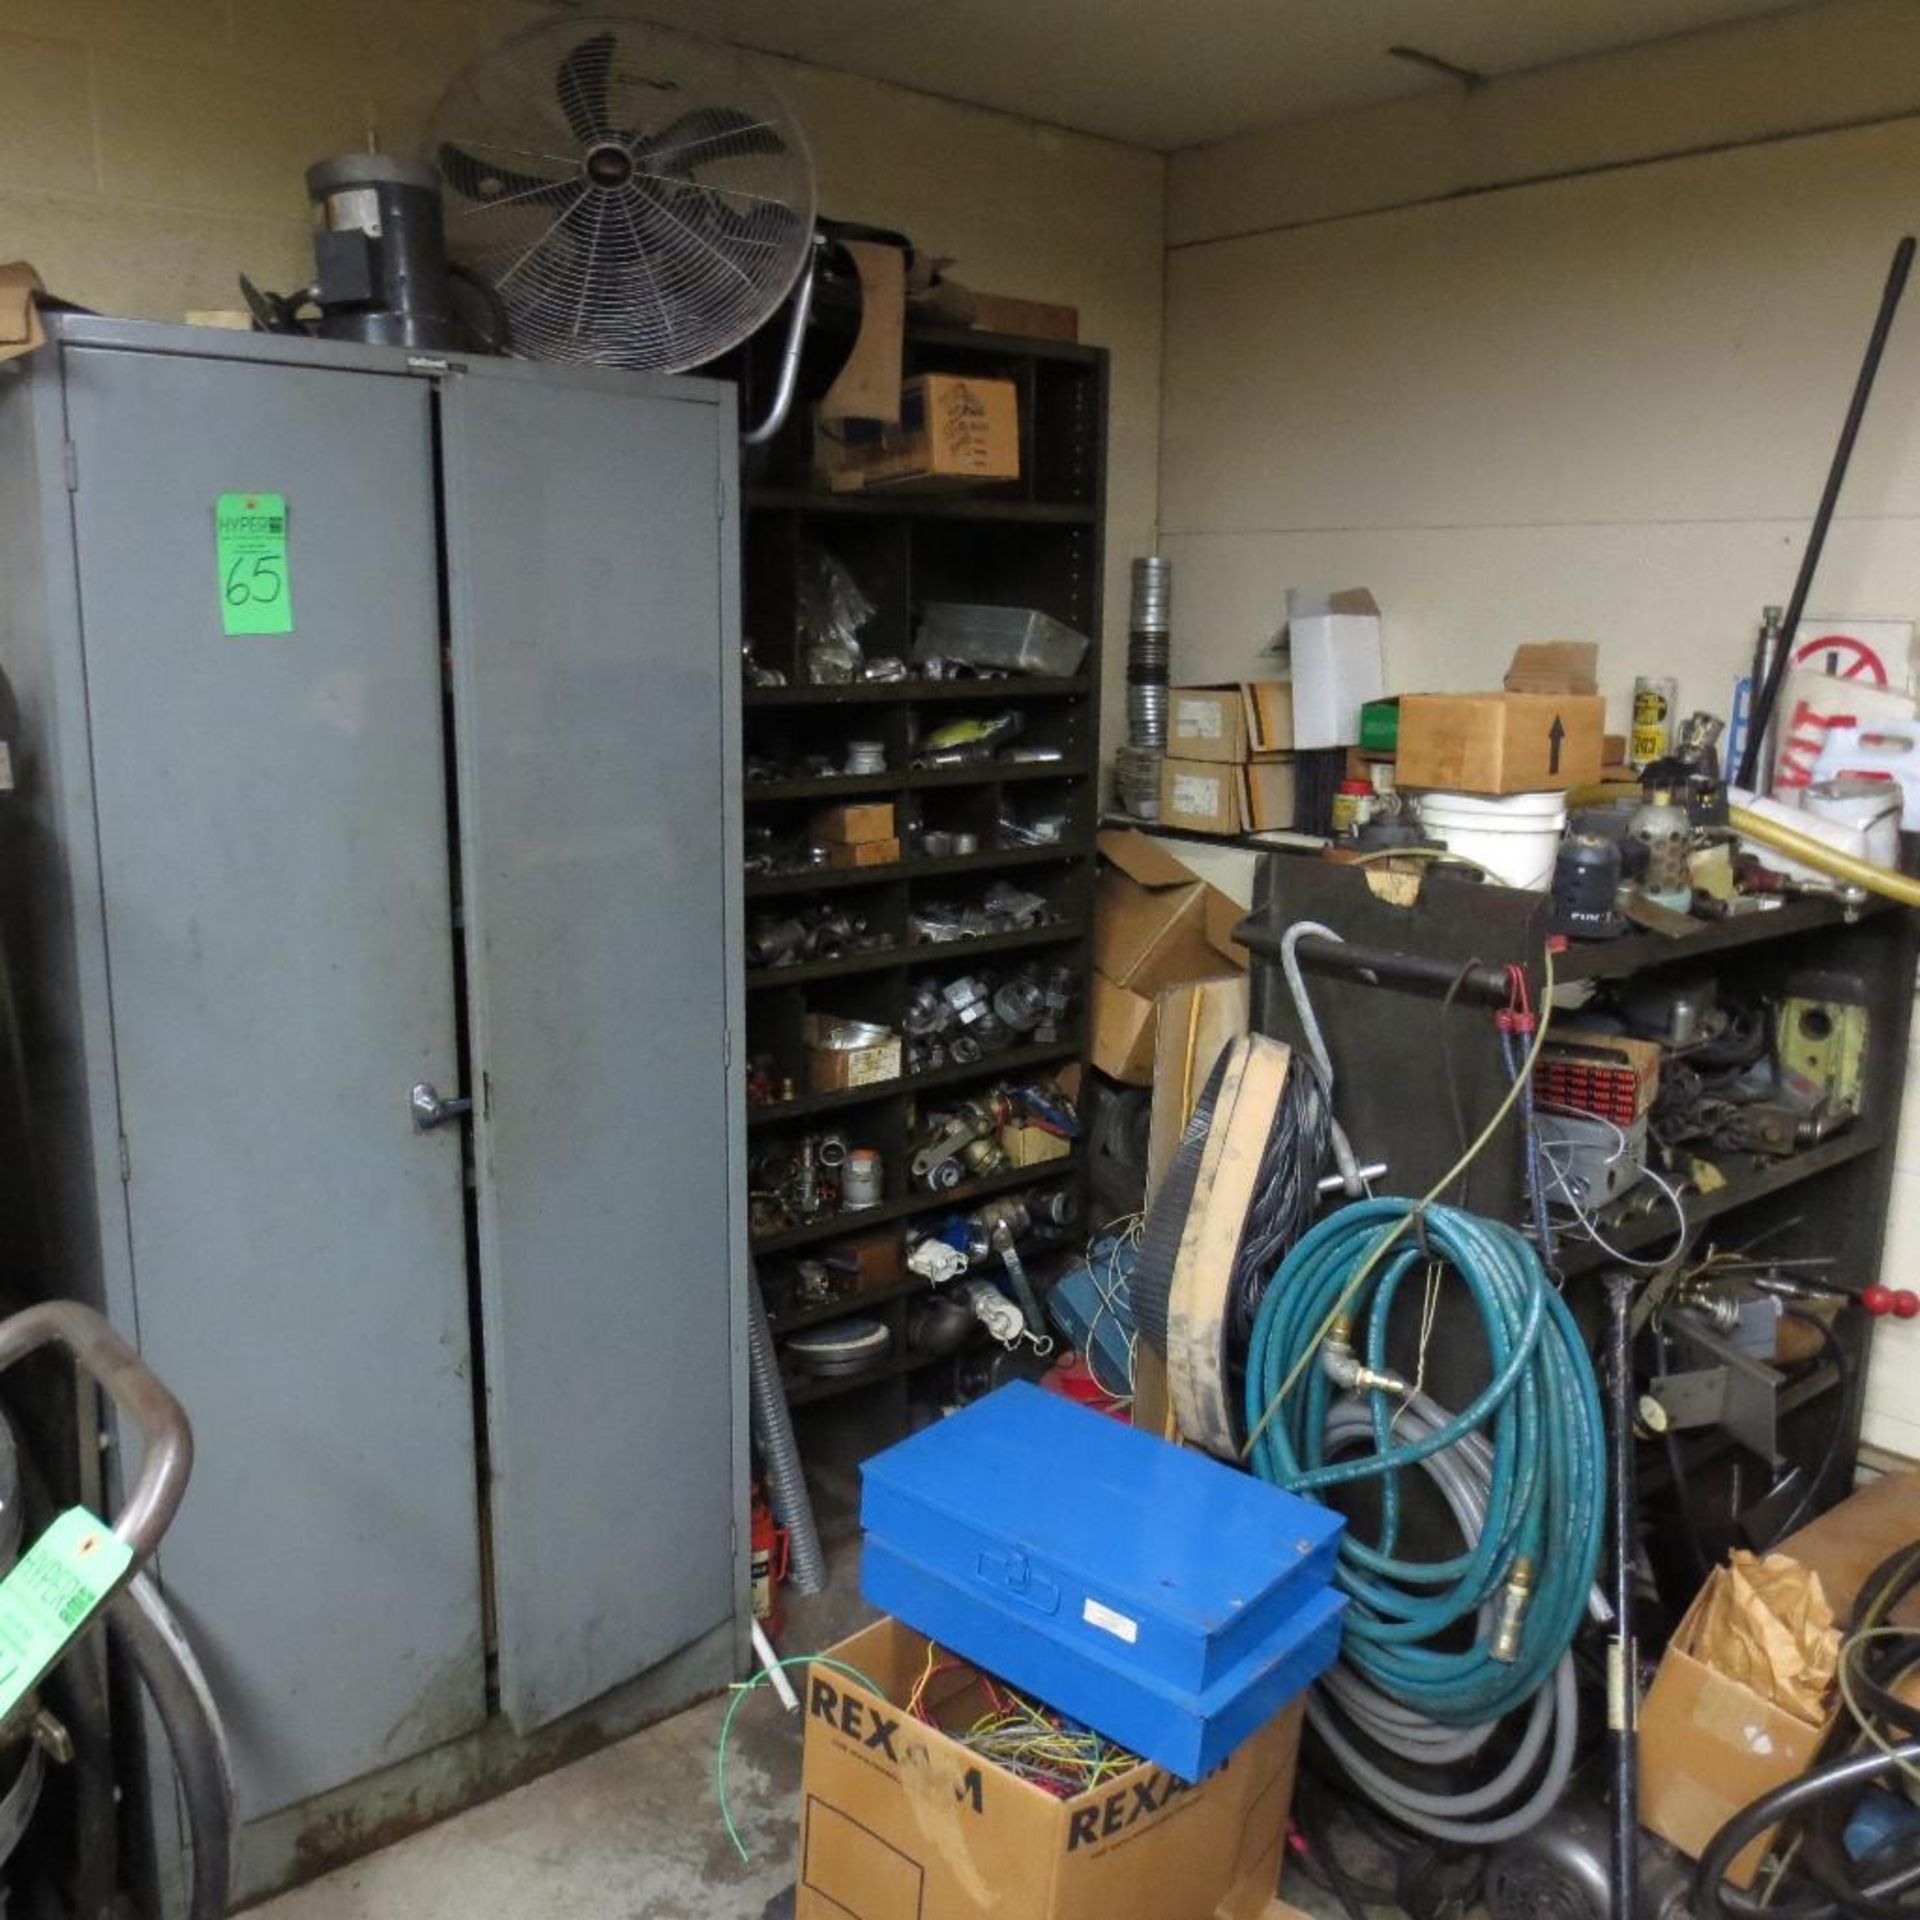 Shelves, Cabinet, Chain, Pumps, Motors and Parts